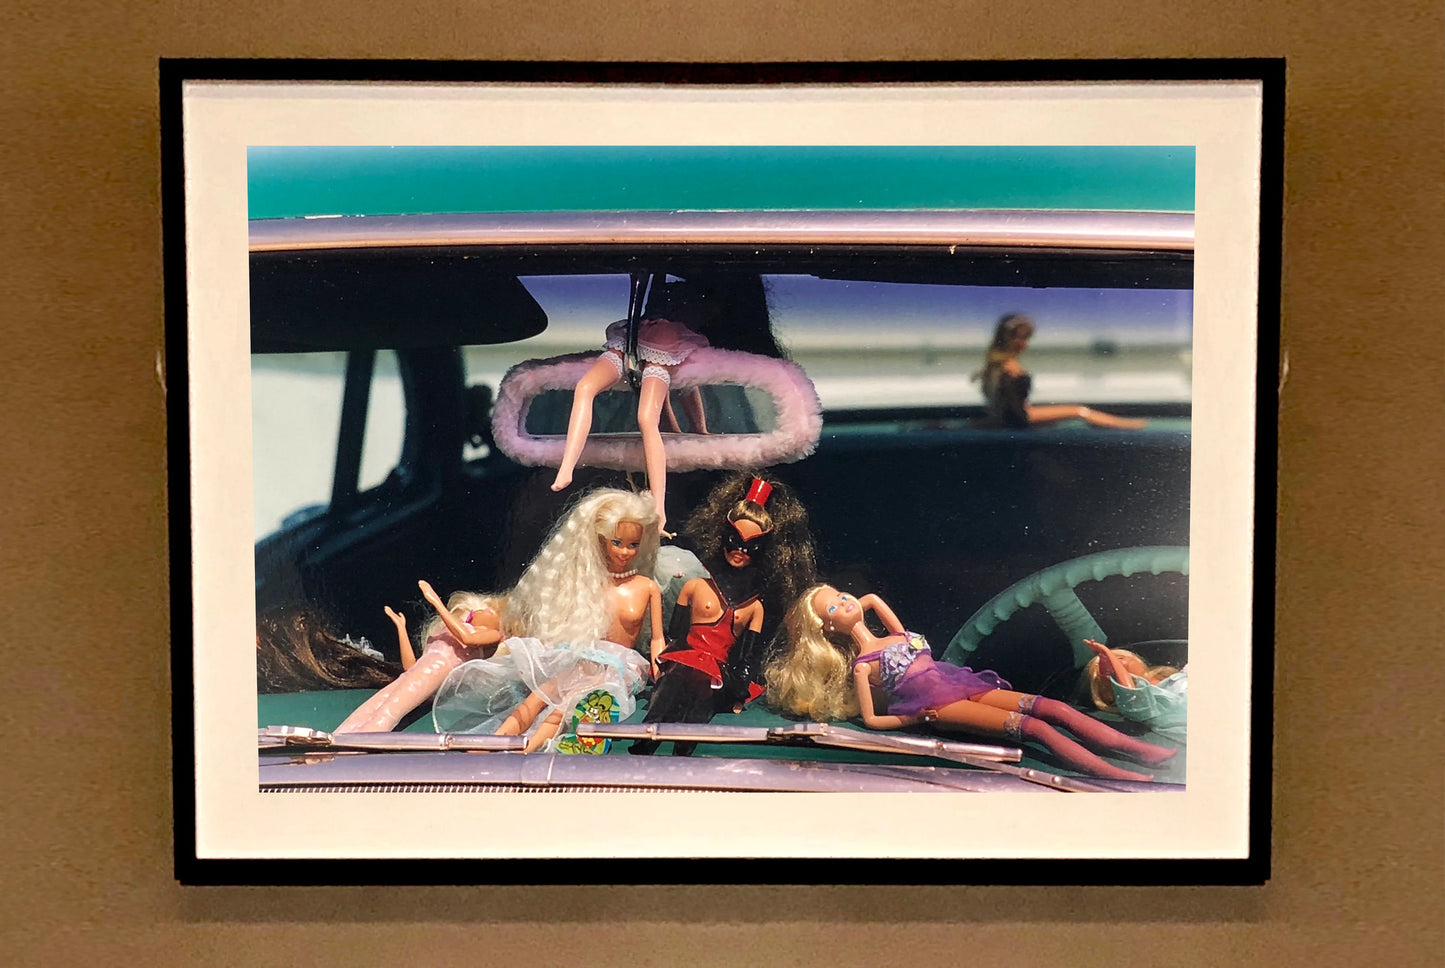 Oldsmobile & Sinful Barbie's, Las Vegas, Nevada, 2001 by Richard Heeps